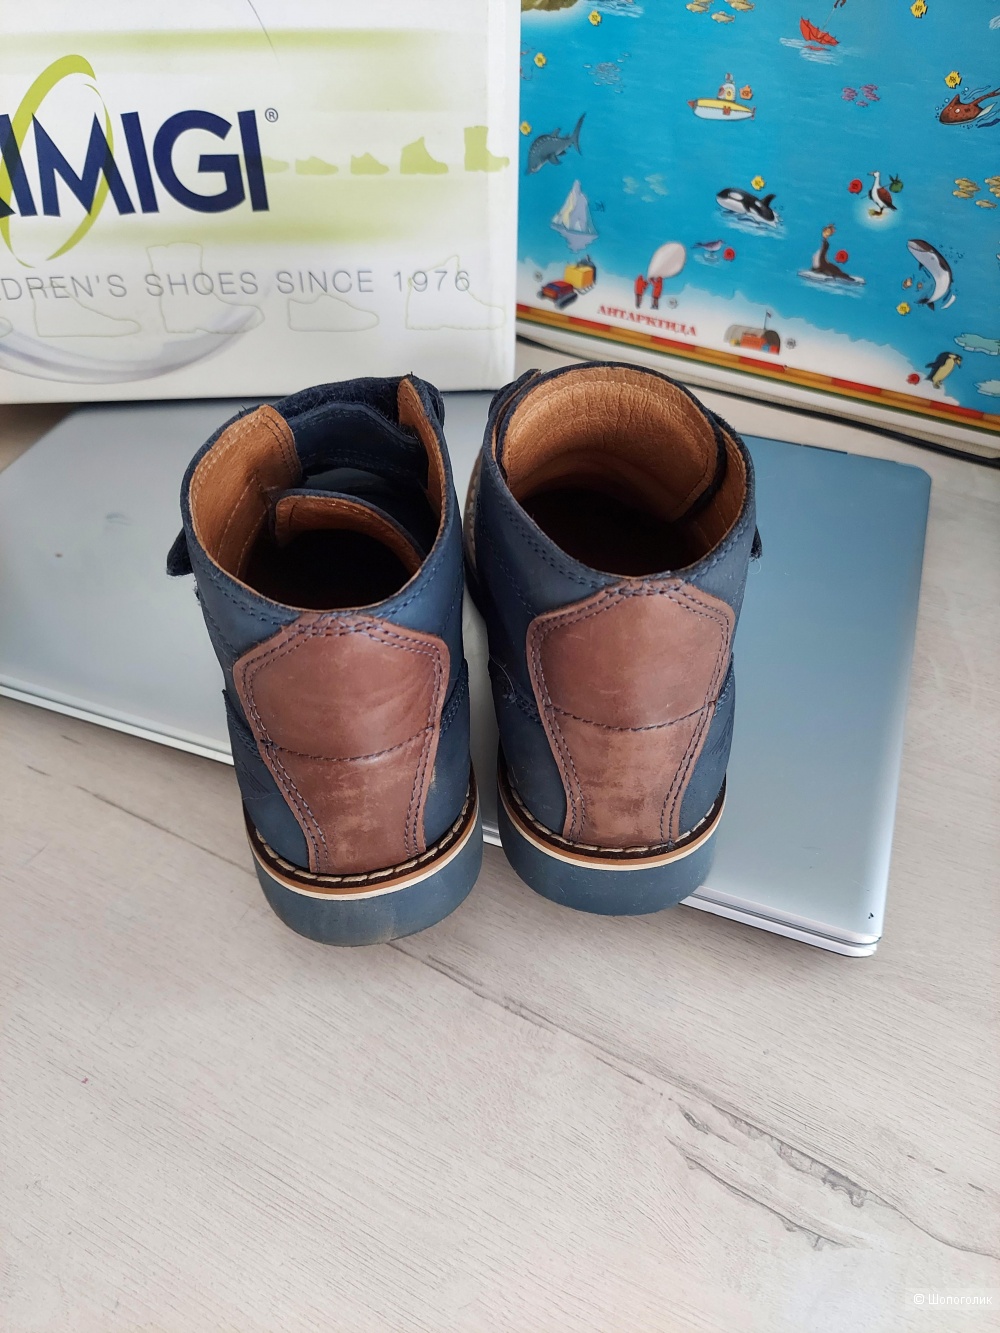 Кожаные ботинки Primigi,  размер 32